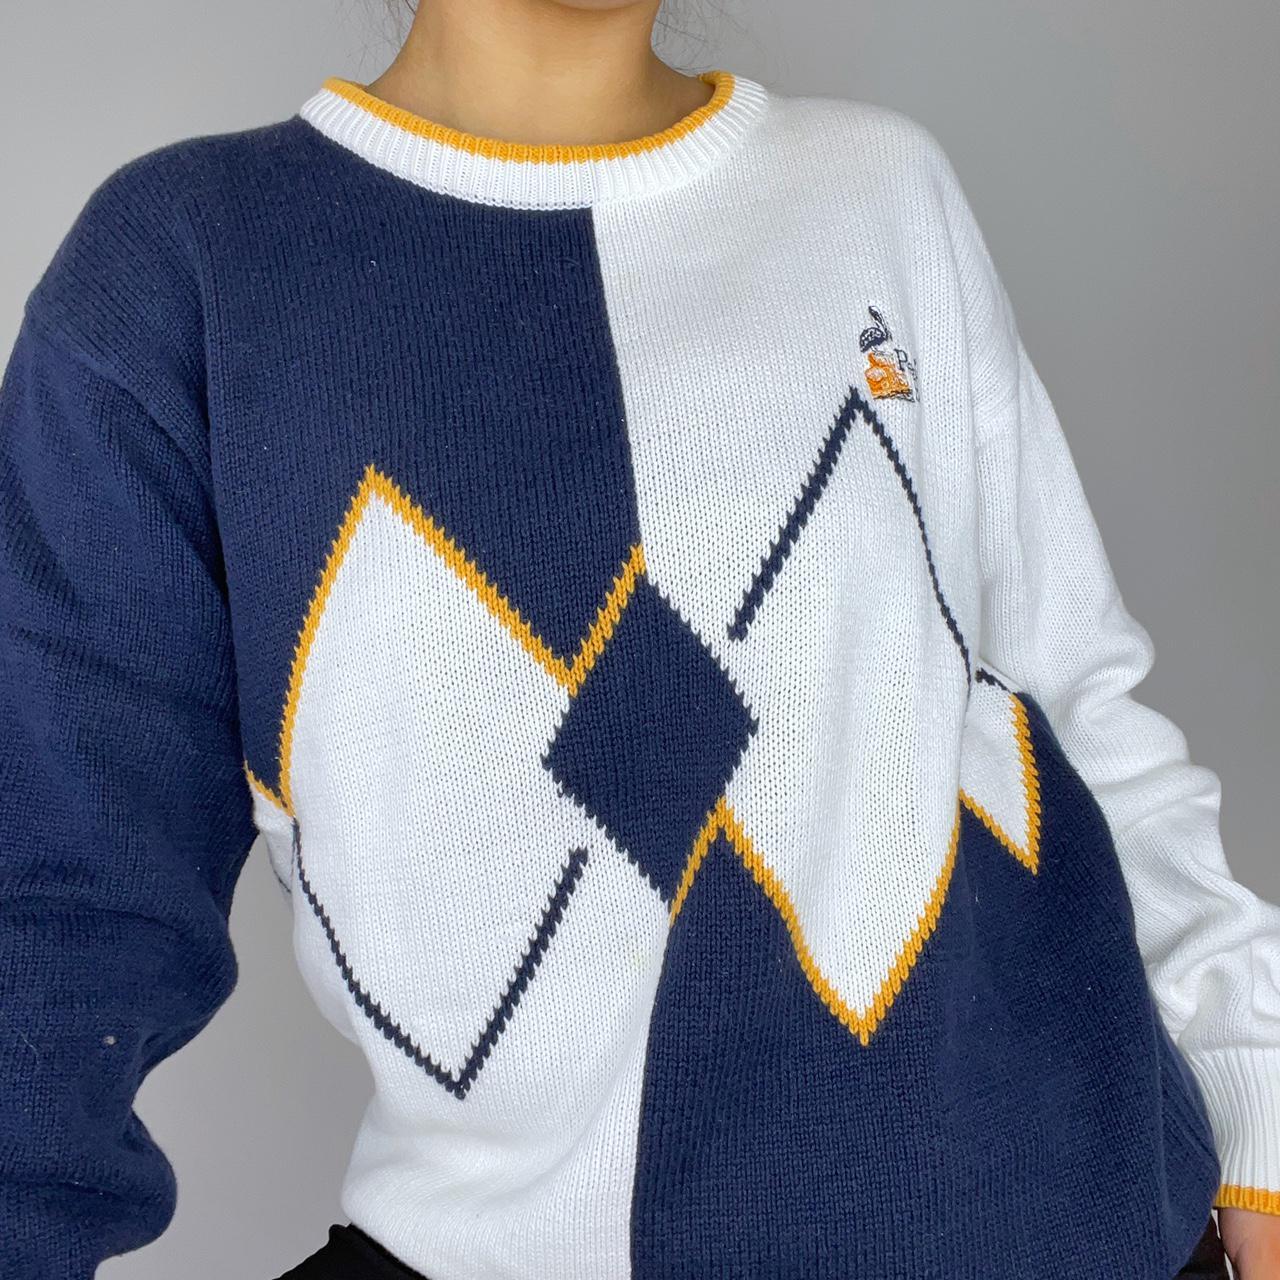 Product Image 2 - Argyle knit sweater 🌞

white knit